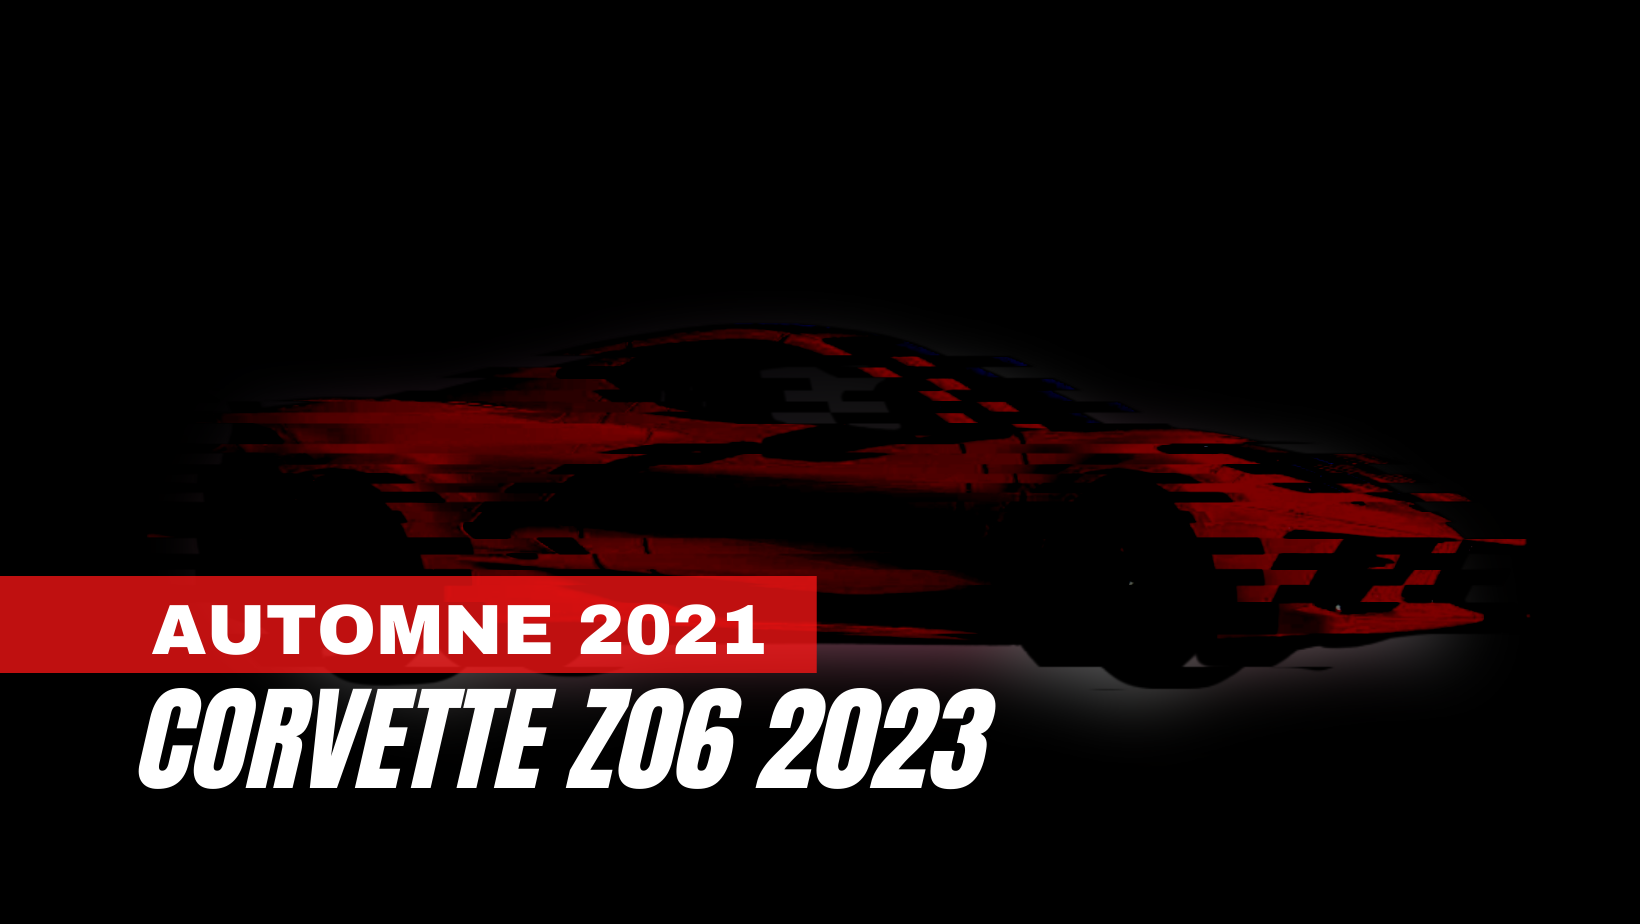 La Corvette Z06 2023 : à venir cet automne!